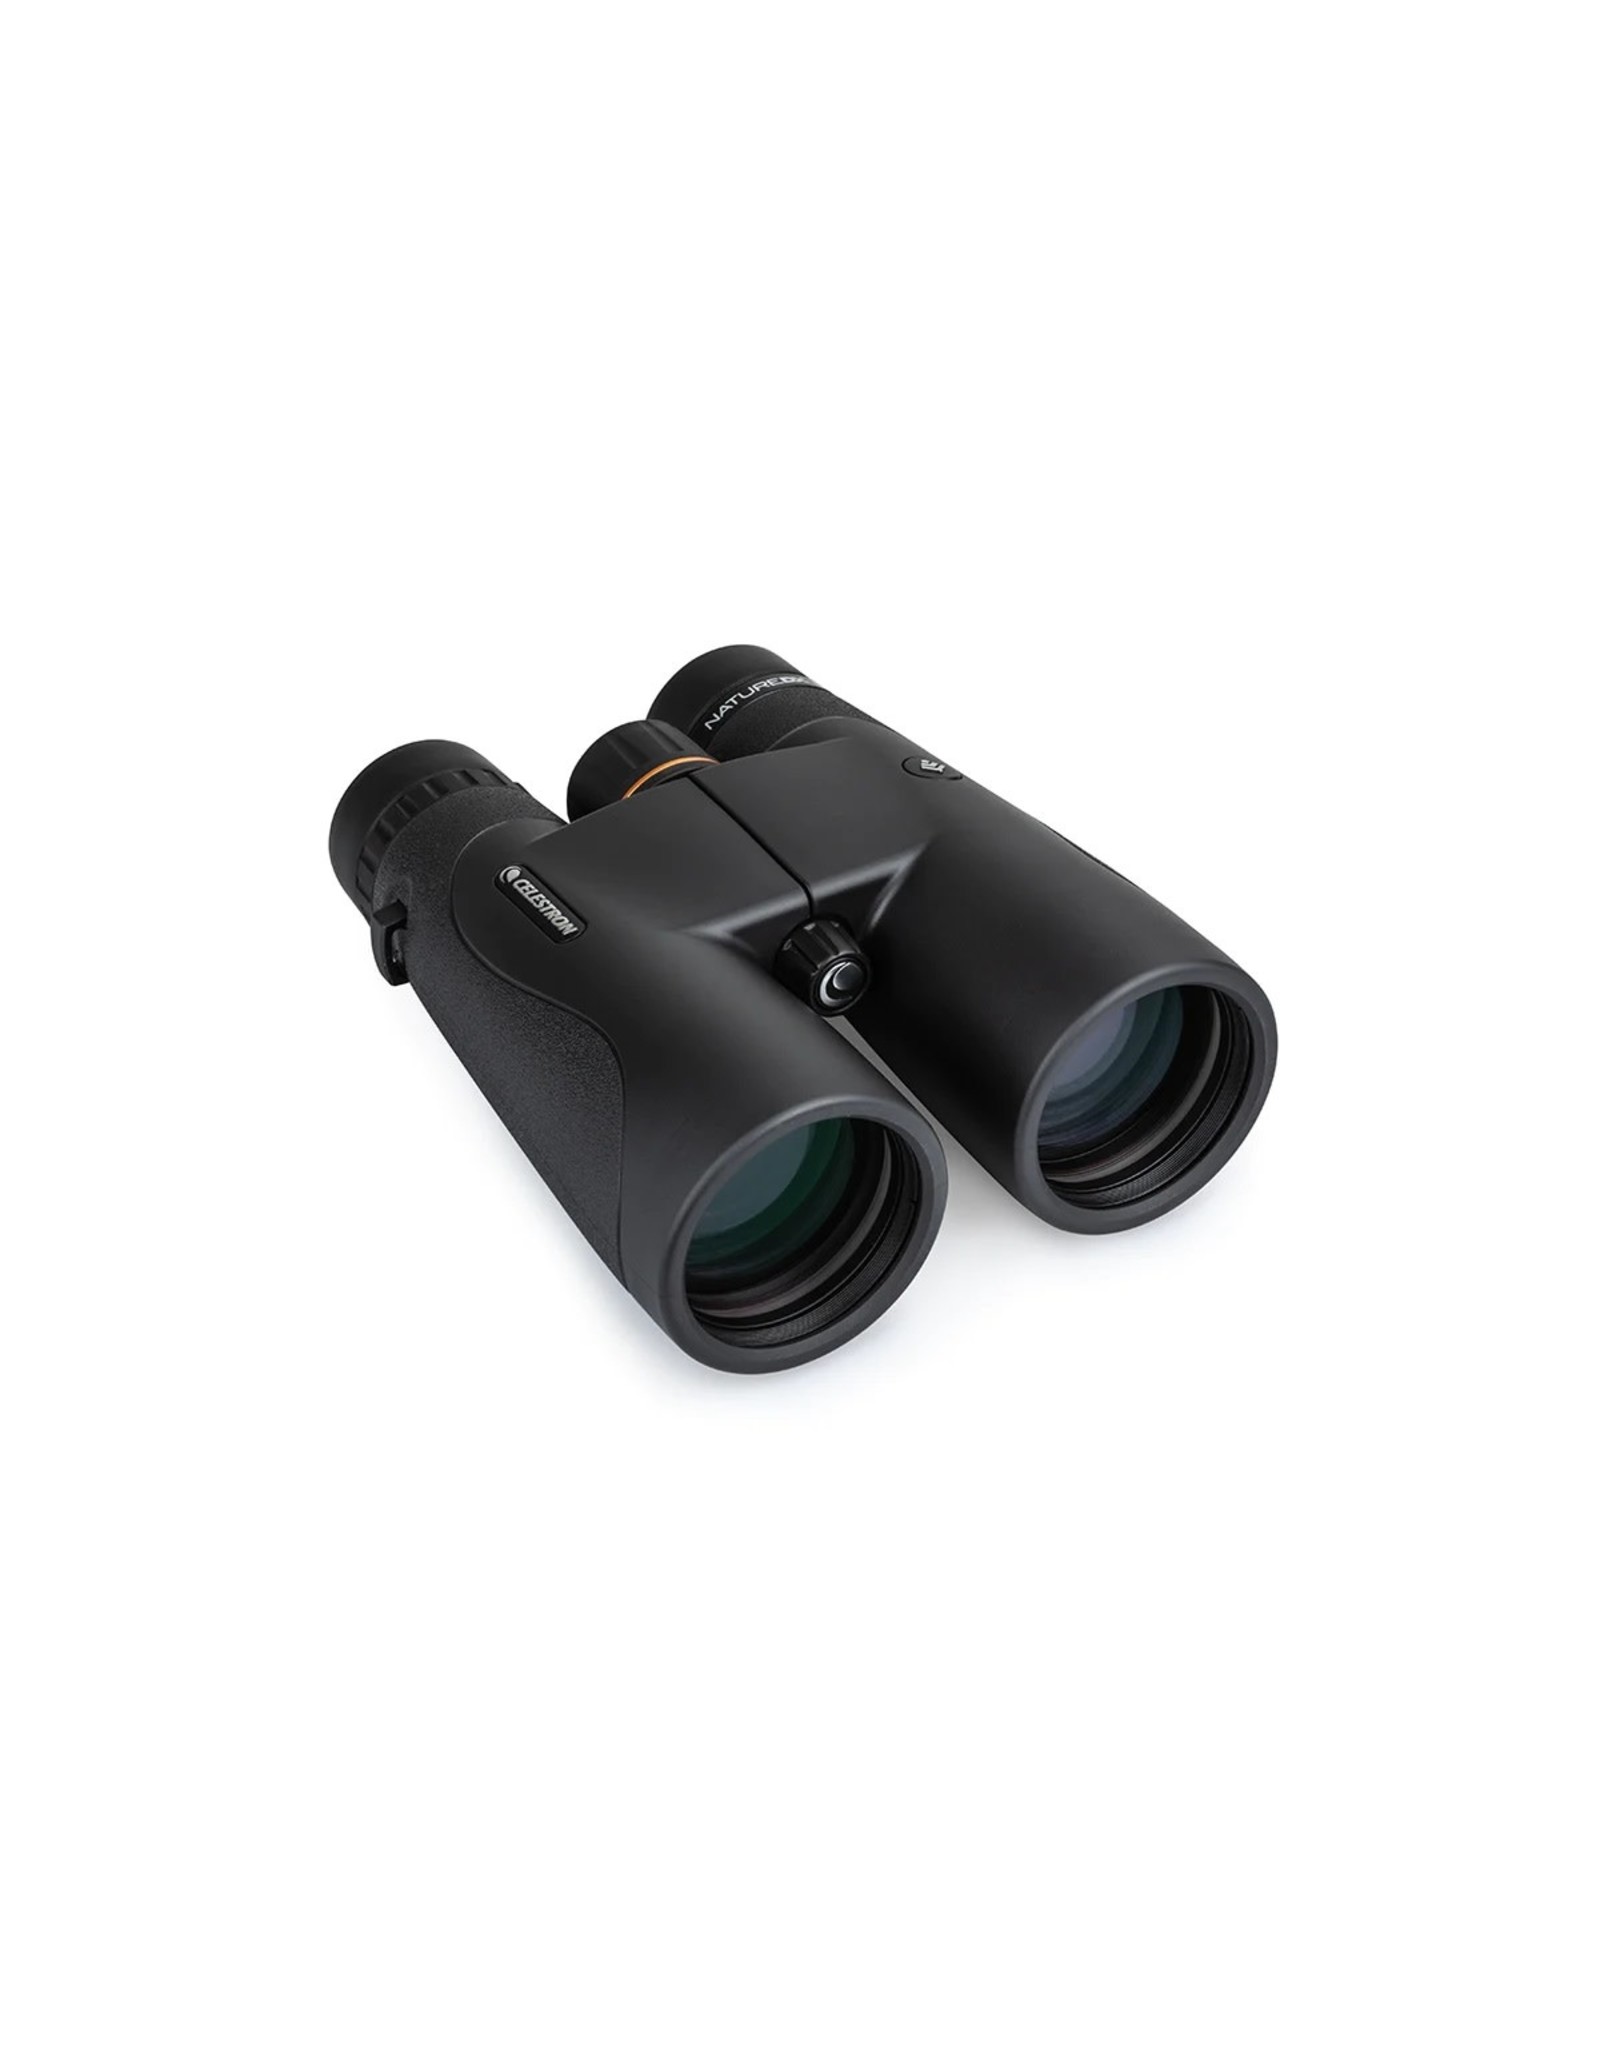 Celestron Celestron Nature DX 10x50 ED Binoculars - BLACK